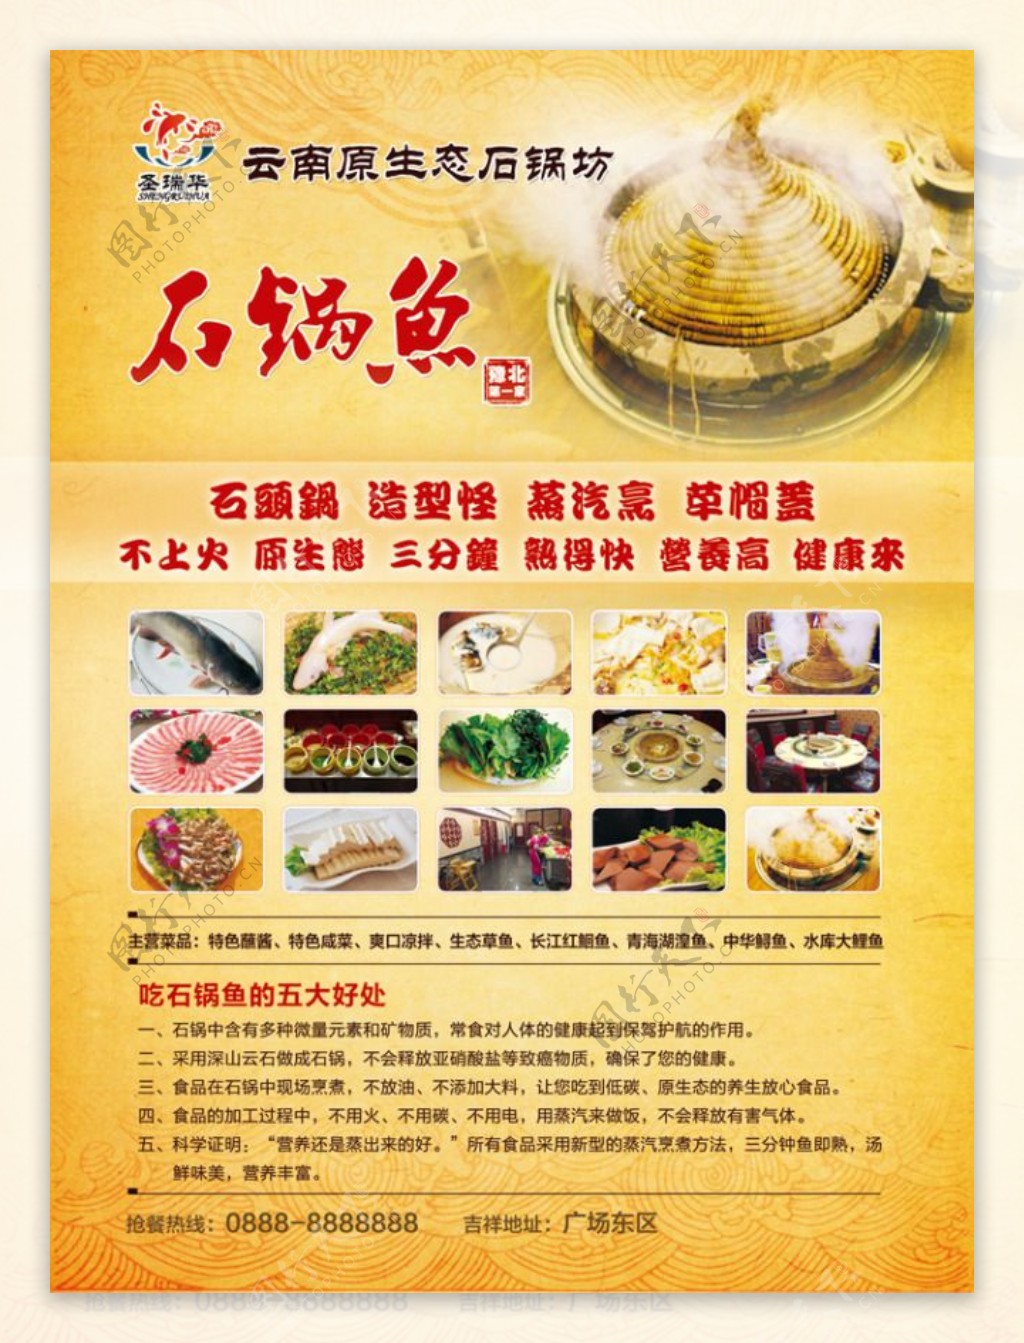 石锅鱼宣传海报